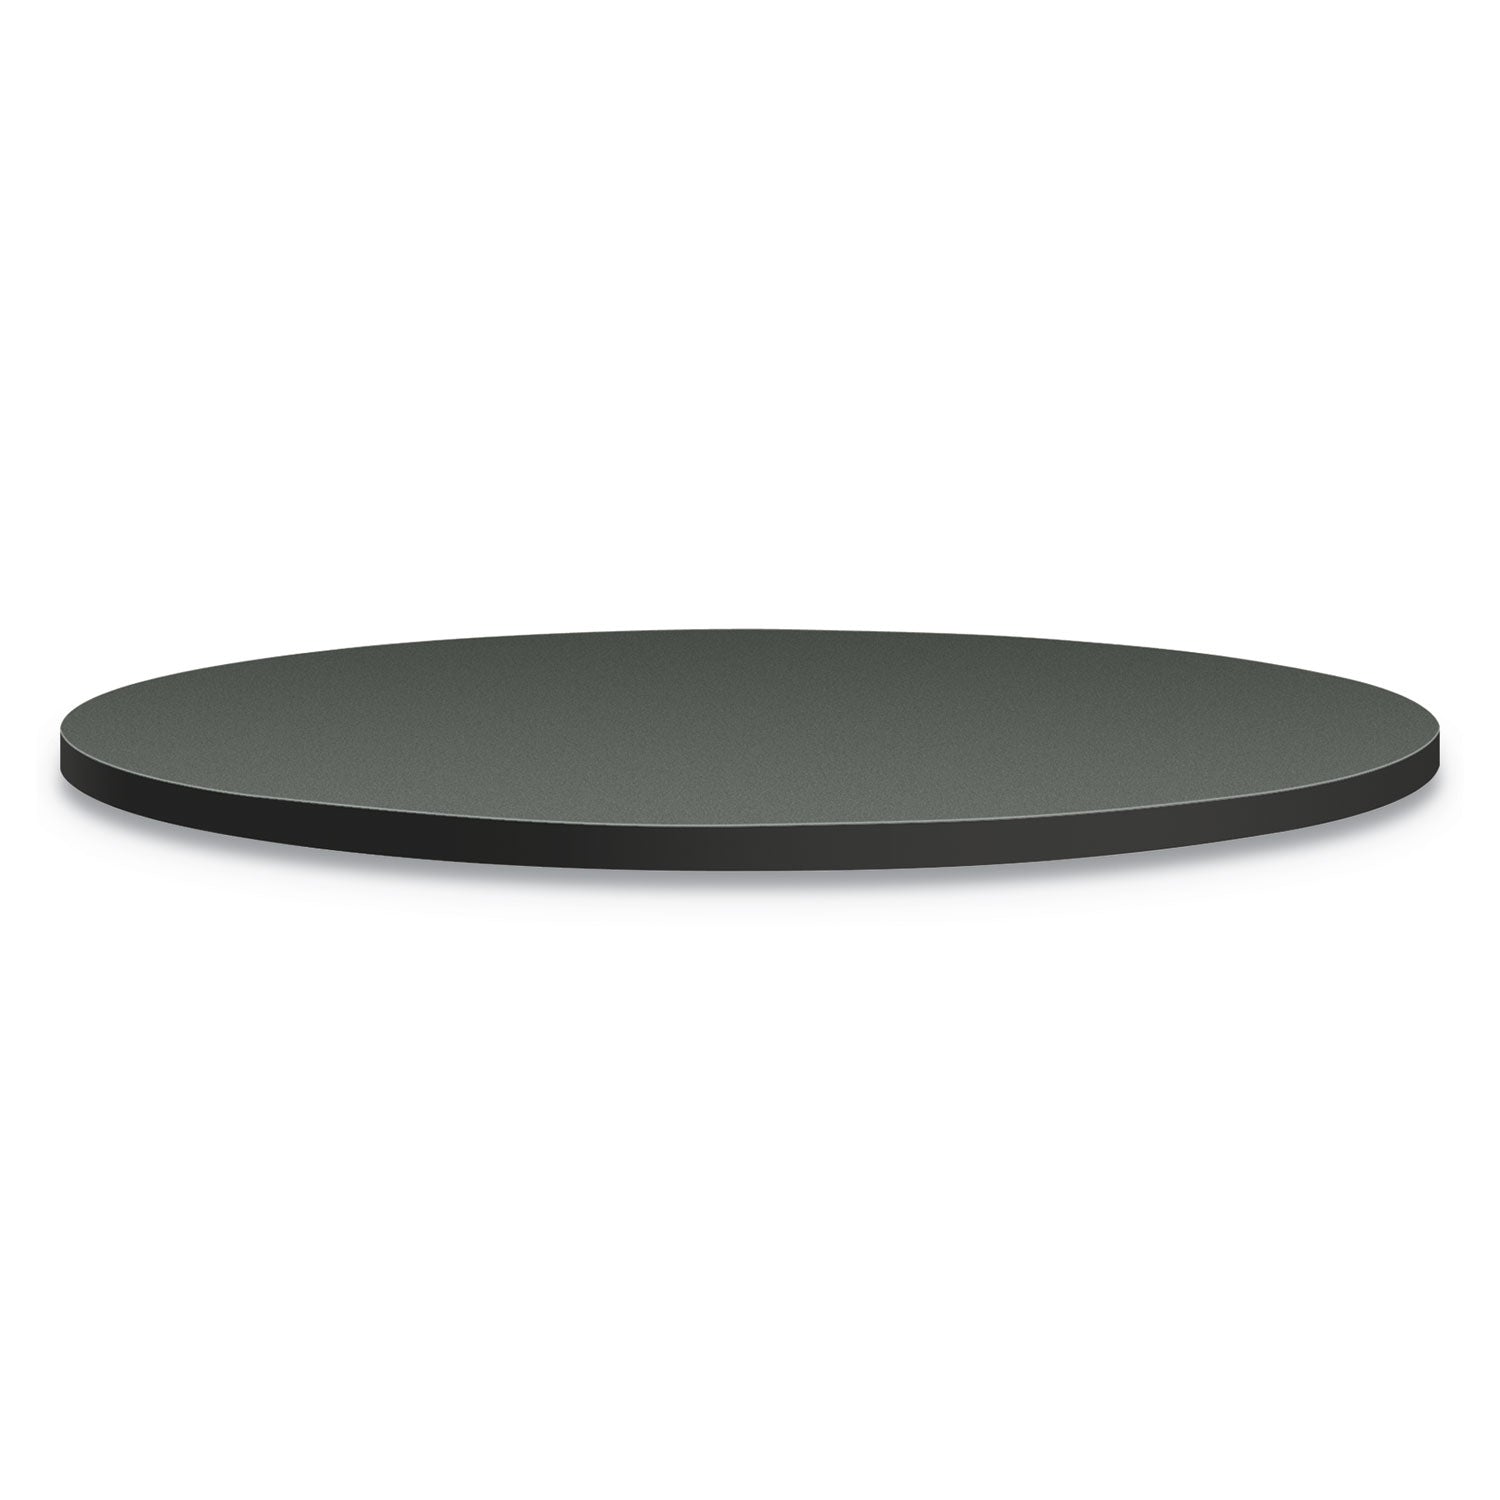 between-round-table-tops-36-diameter-steel-mesh-charcoal_honbtrnd36na9s - 1